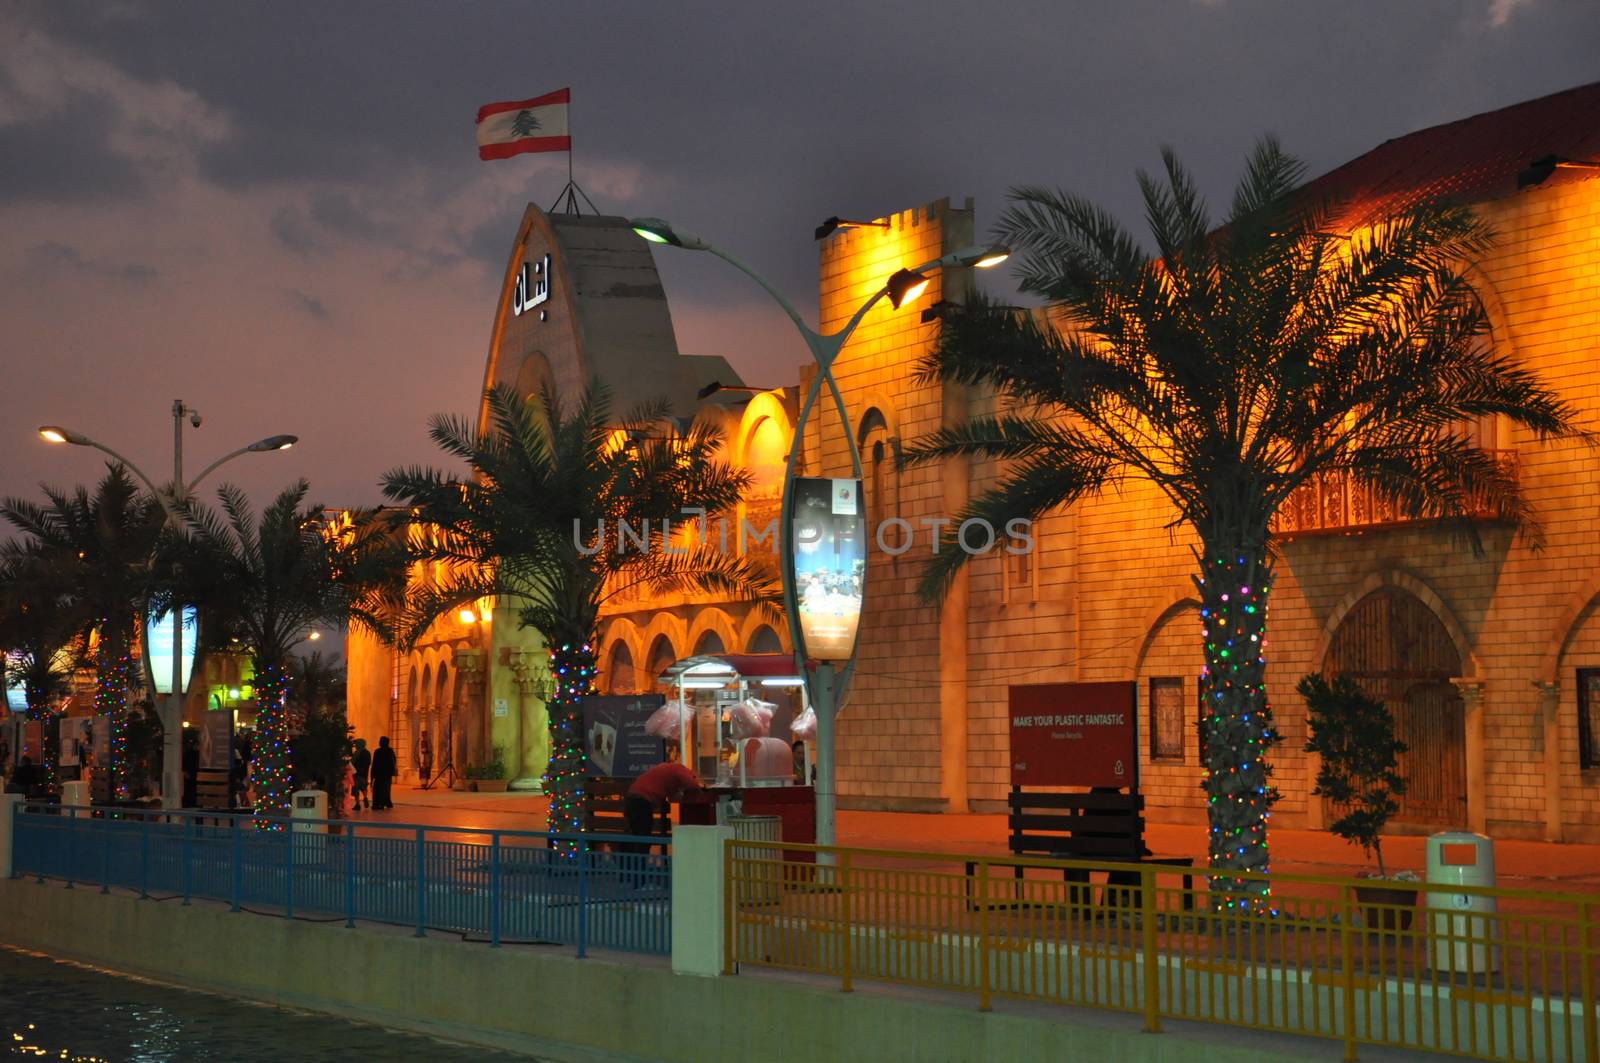 Lebanon pavilion at Global Village in Dubai, UAE by sainaniritu